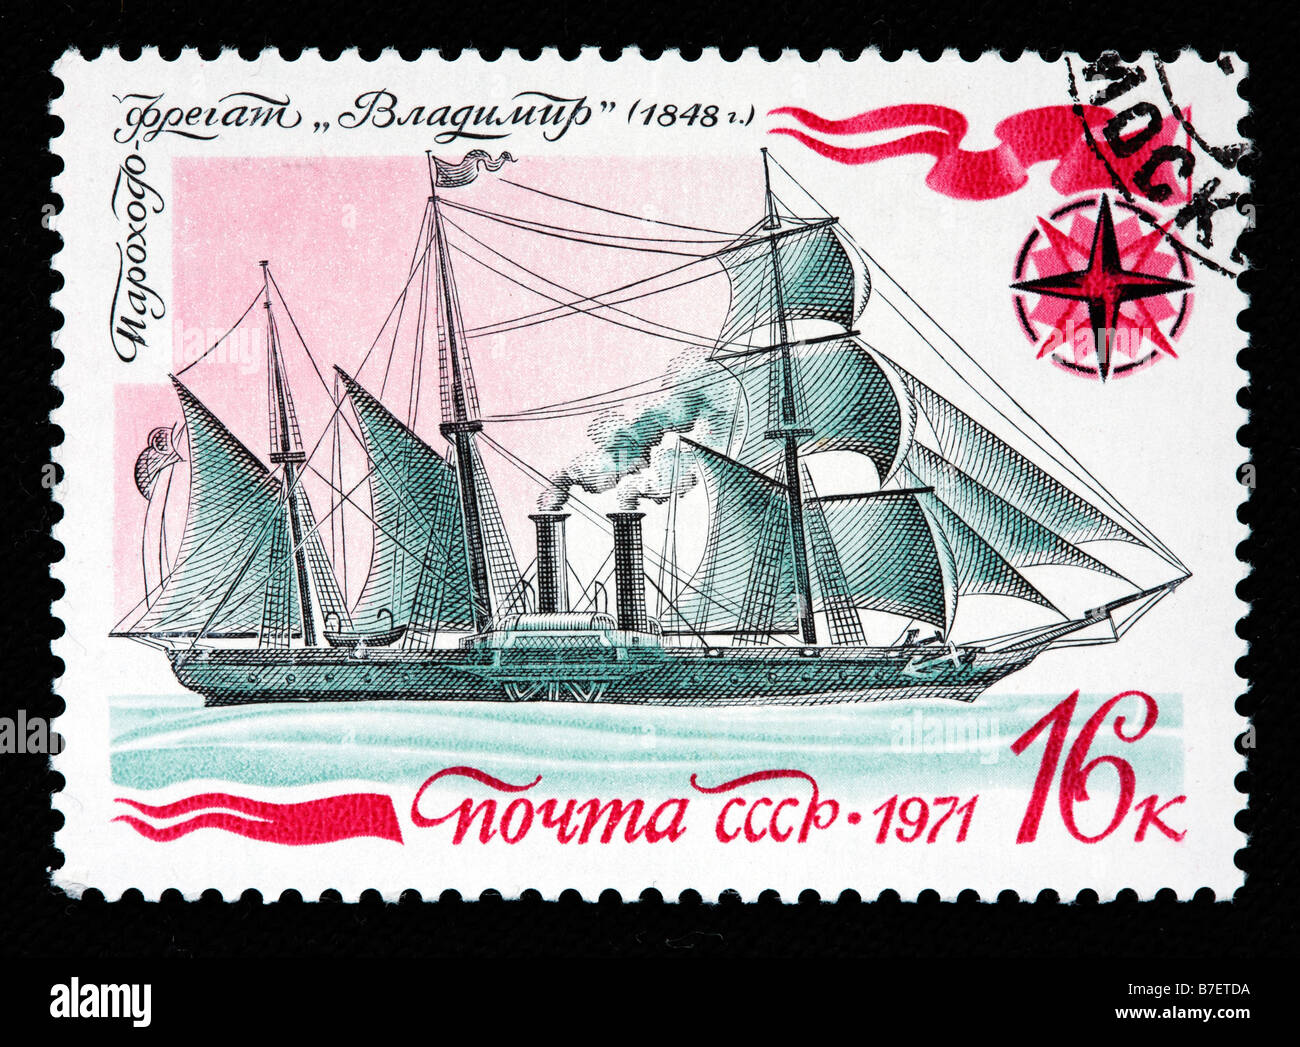 Russischen Dampf und Segel Schiff "Vladimir" (1848), Briefmarke, UdSSR, 1971 Stockfoto